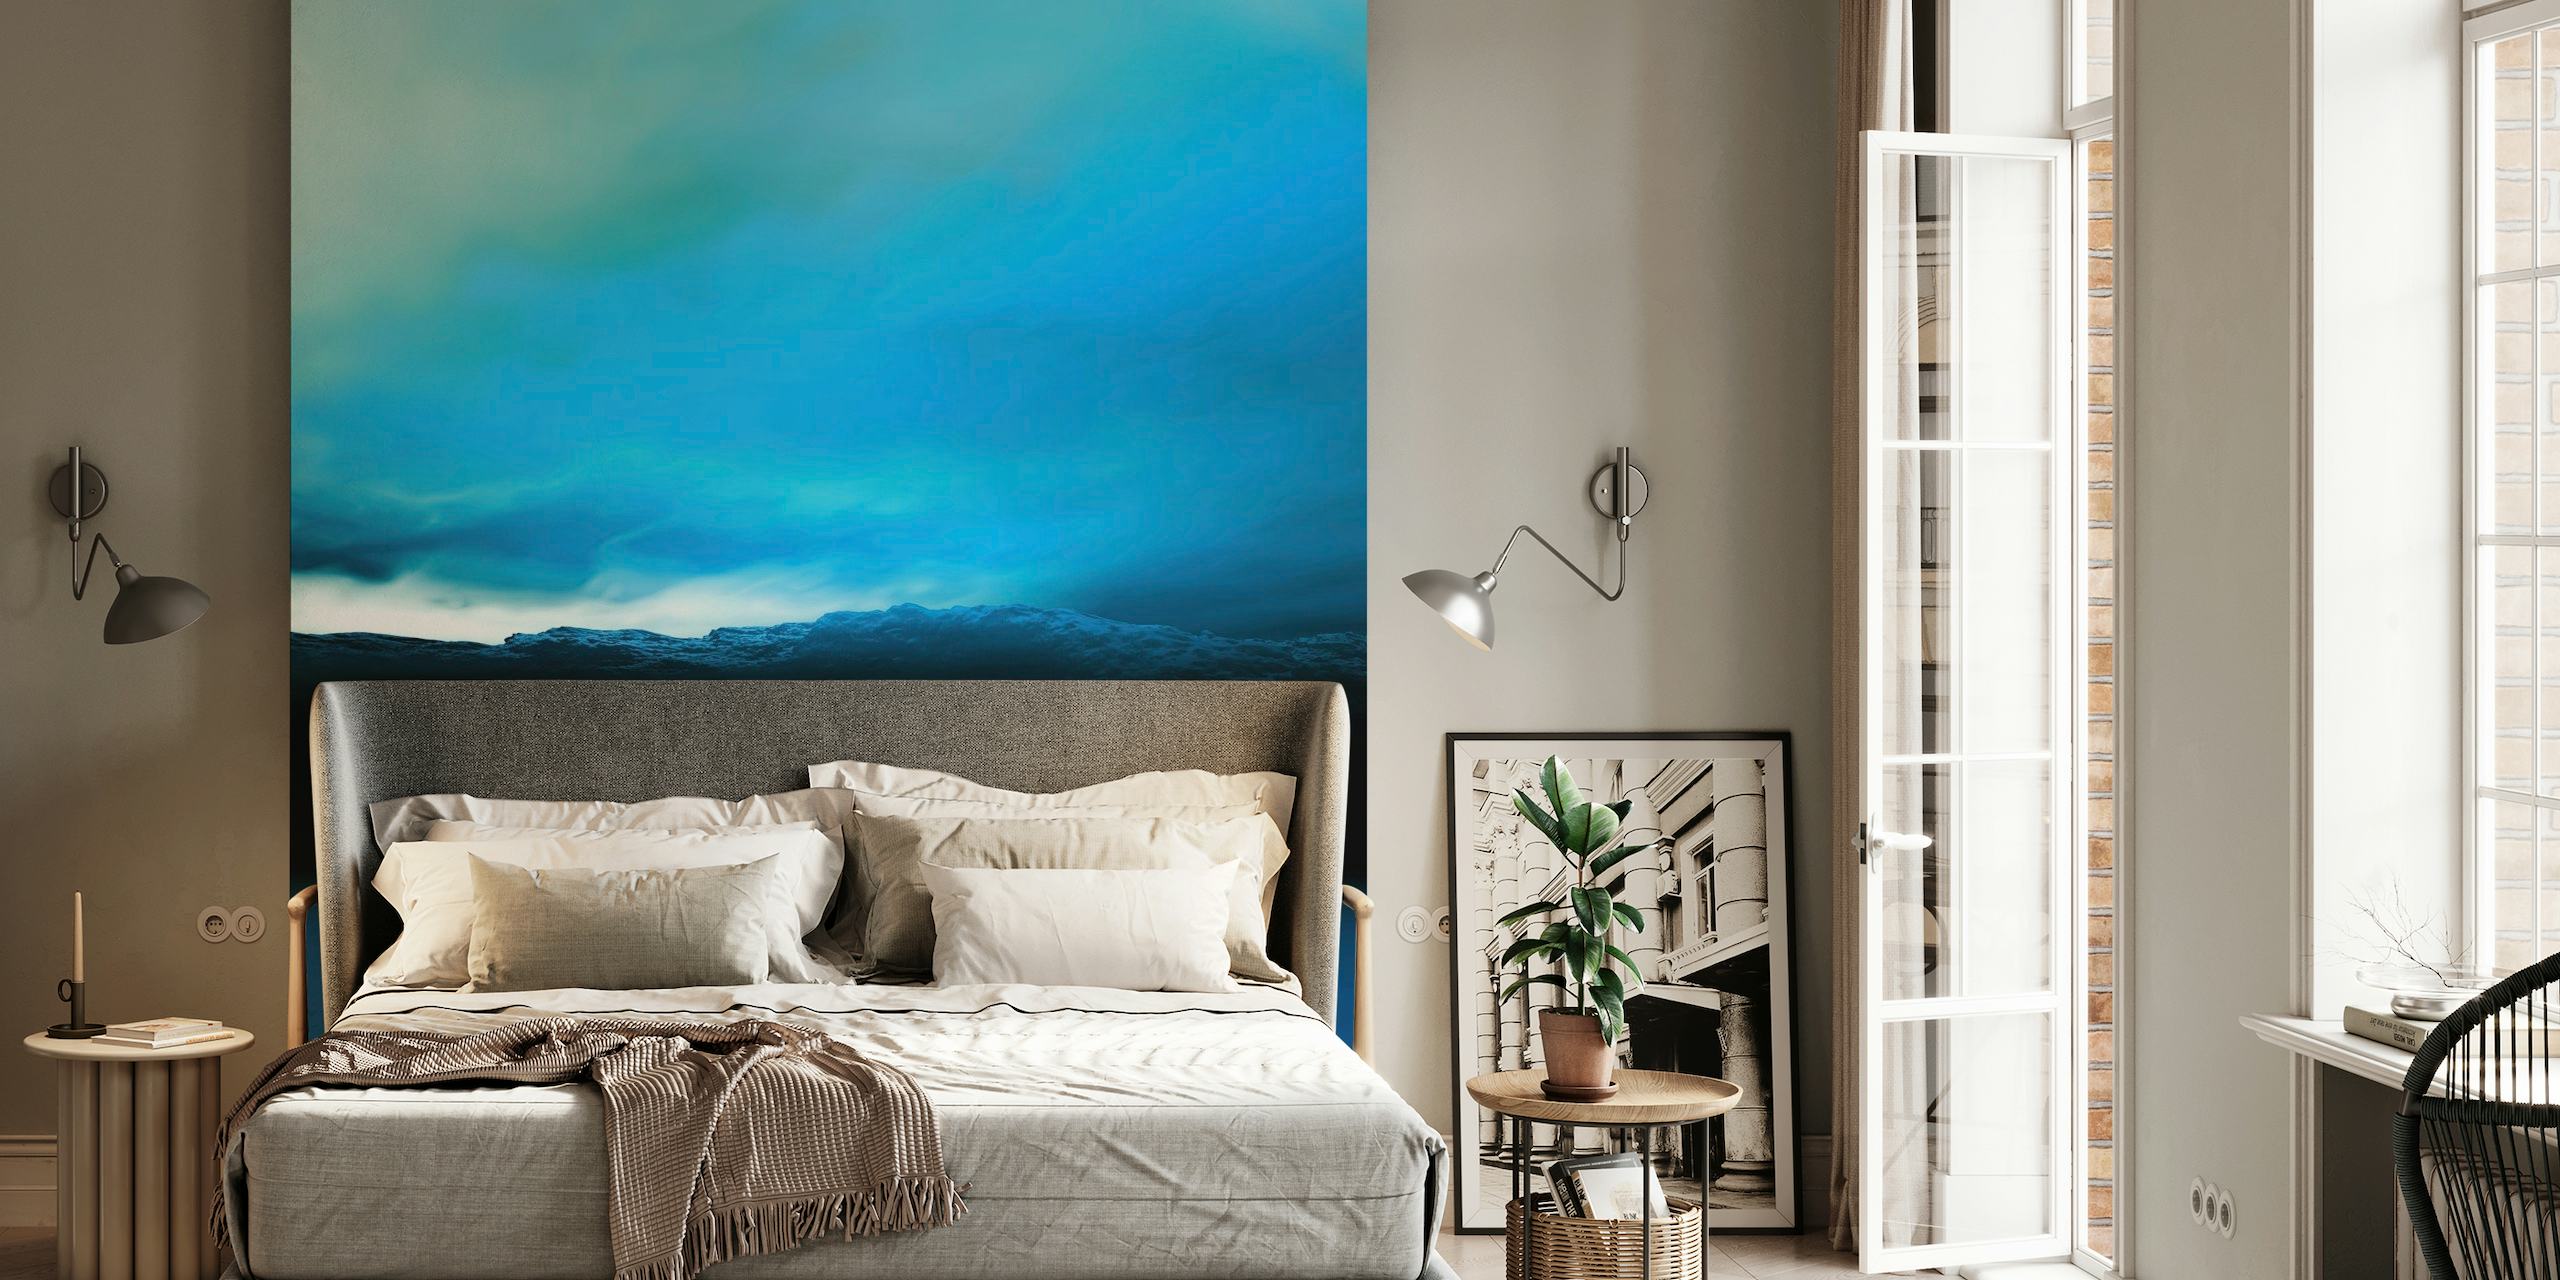 Blauwachtige zonsondergang muurschildering met serene blauwe tinten en donkere landschapssilhouetten